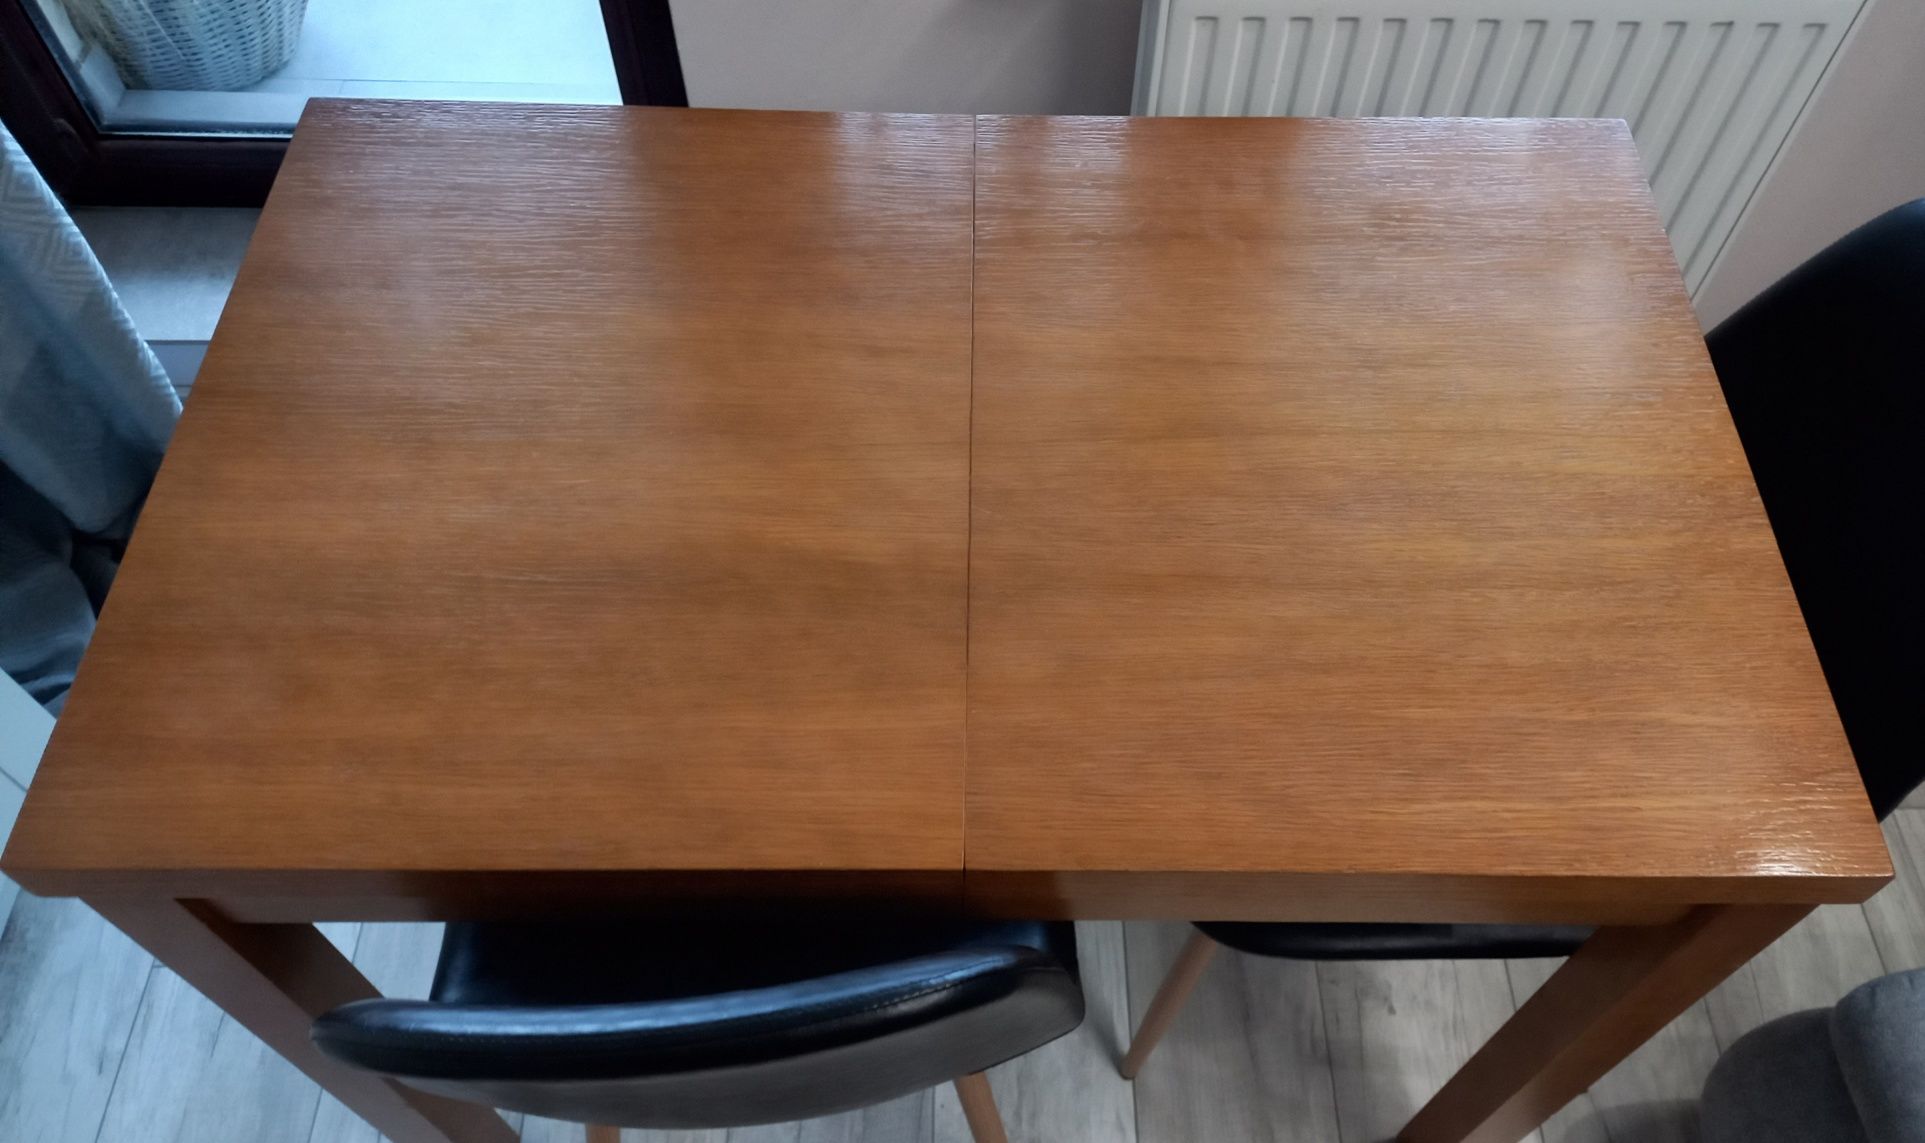 Stół drewniany 97 cm x 57 cm rozkładany z 4 wkładkami do 179 cm